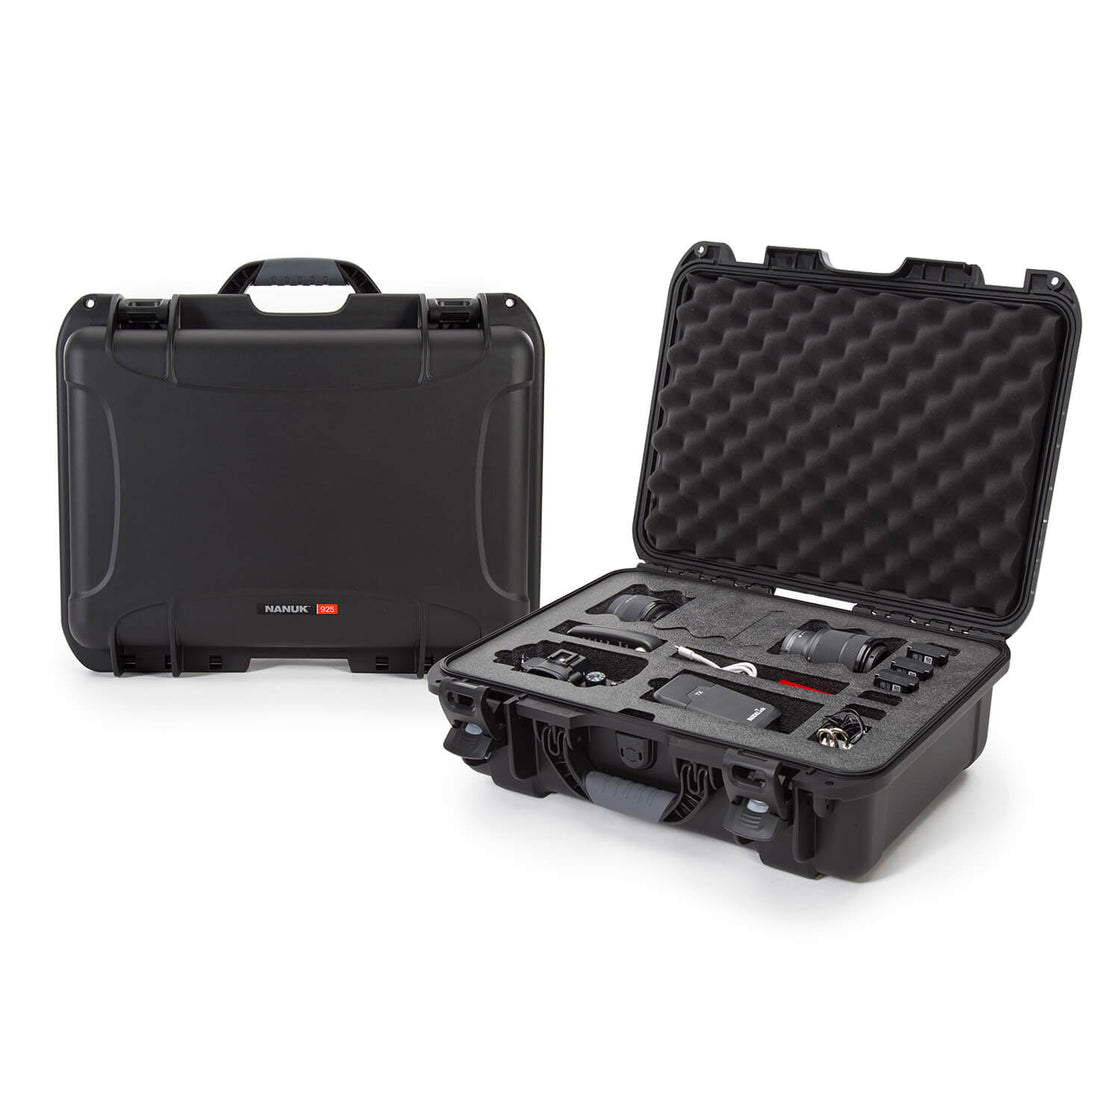 Nanuk 925-EDSLR1 Waterproof Carry-on Hard Case with Foam Insert for Canon, Nikon - 1 DSLR Body and Lens/Lenses - Black